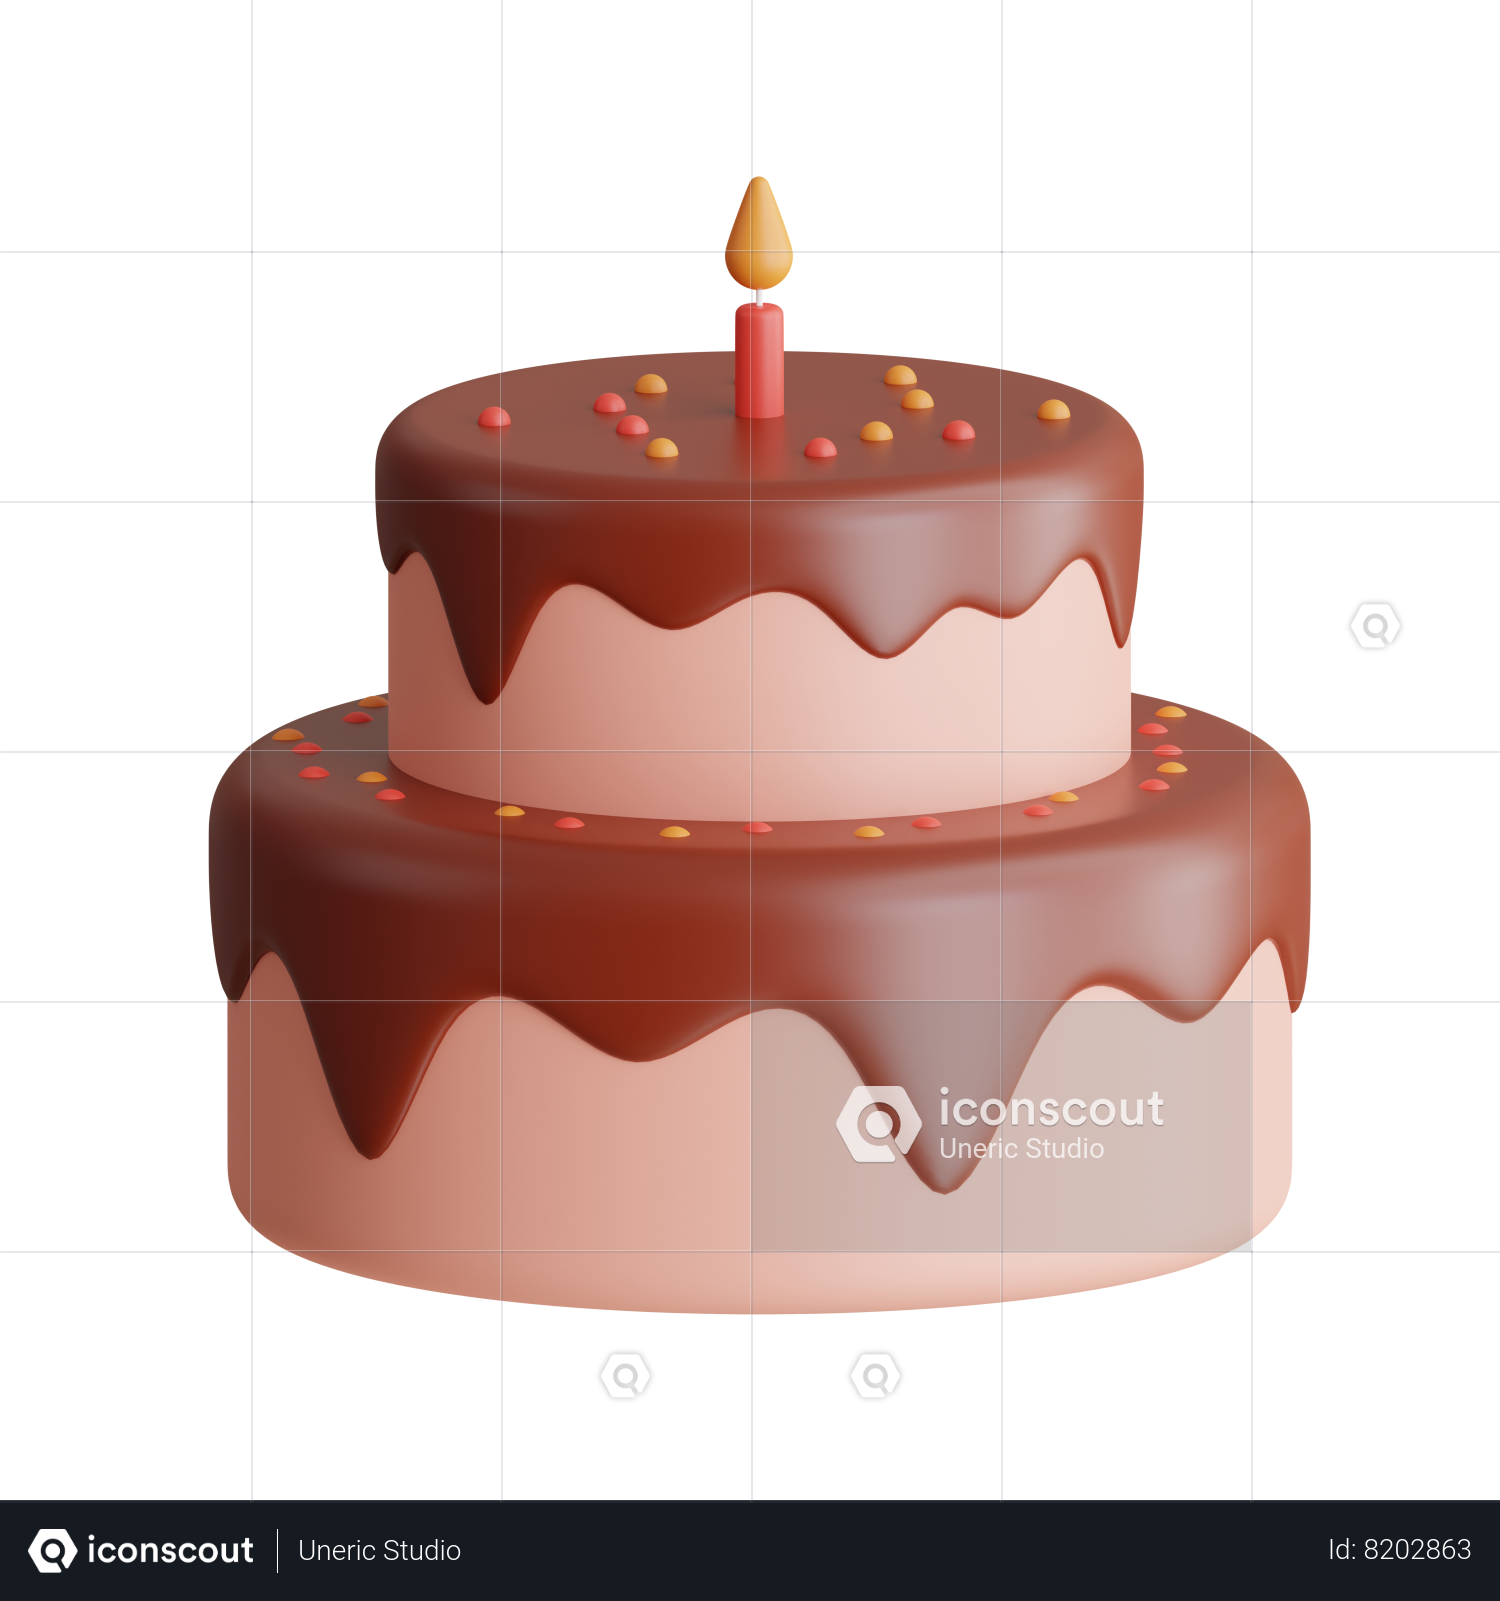 You Tube App |Logo Cake 2 Kg